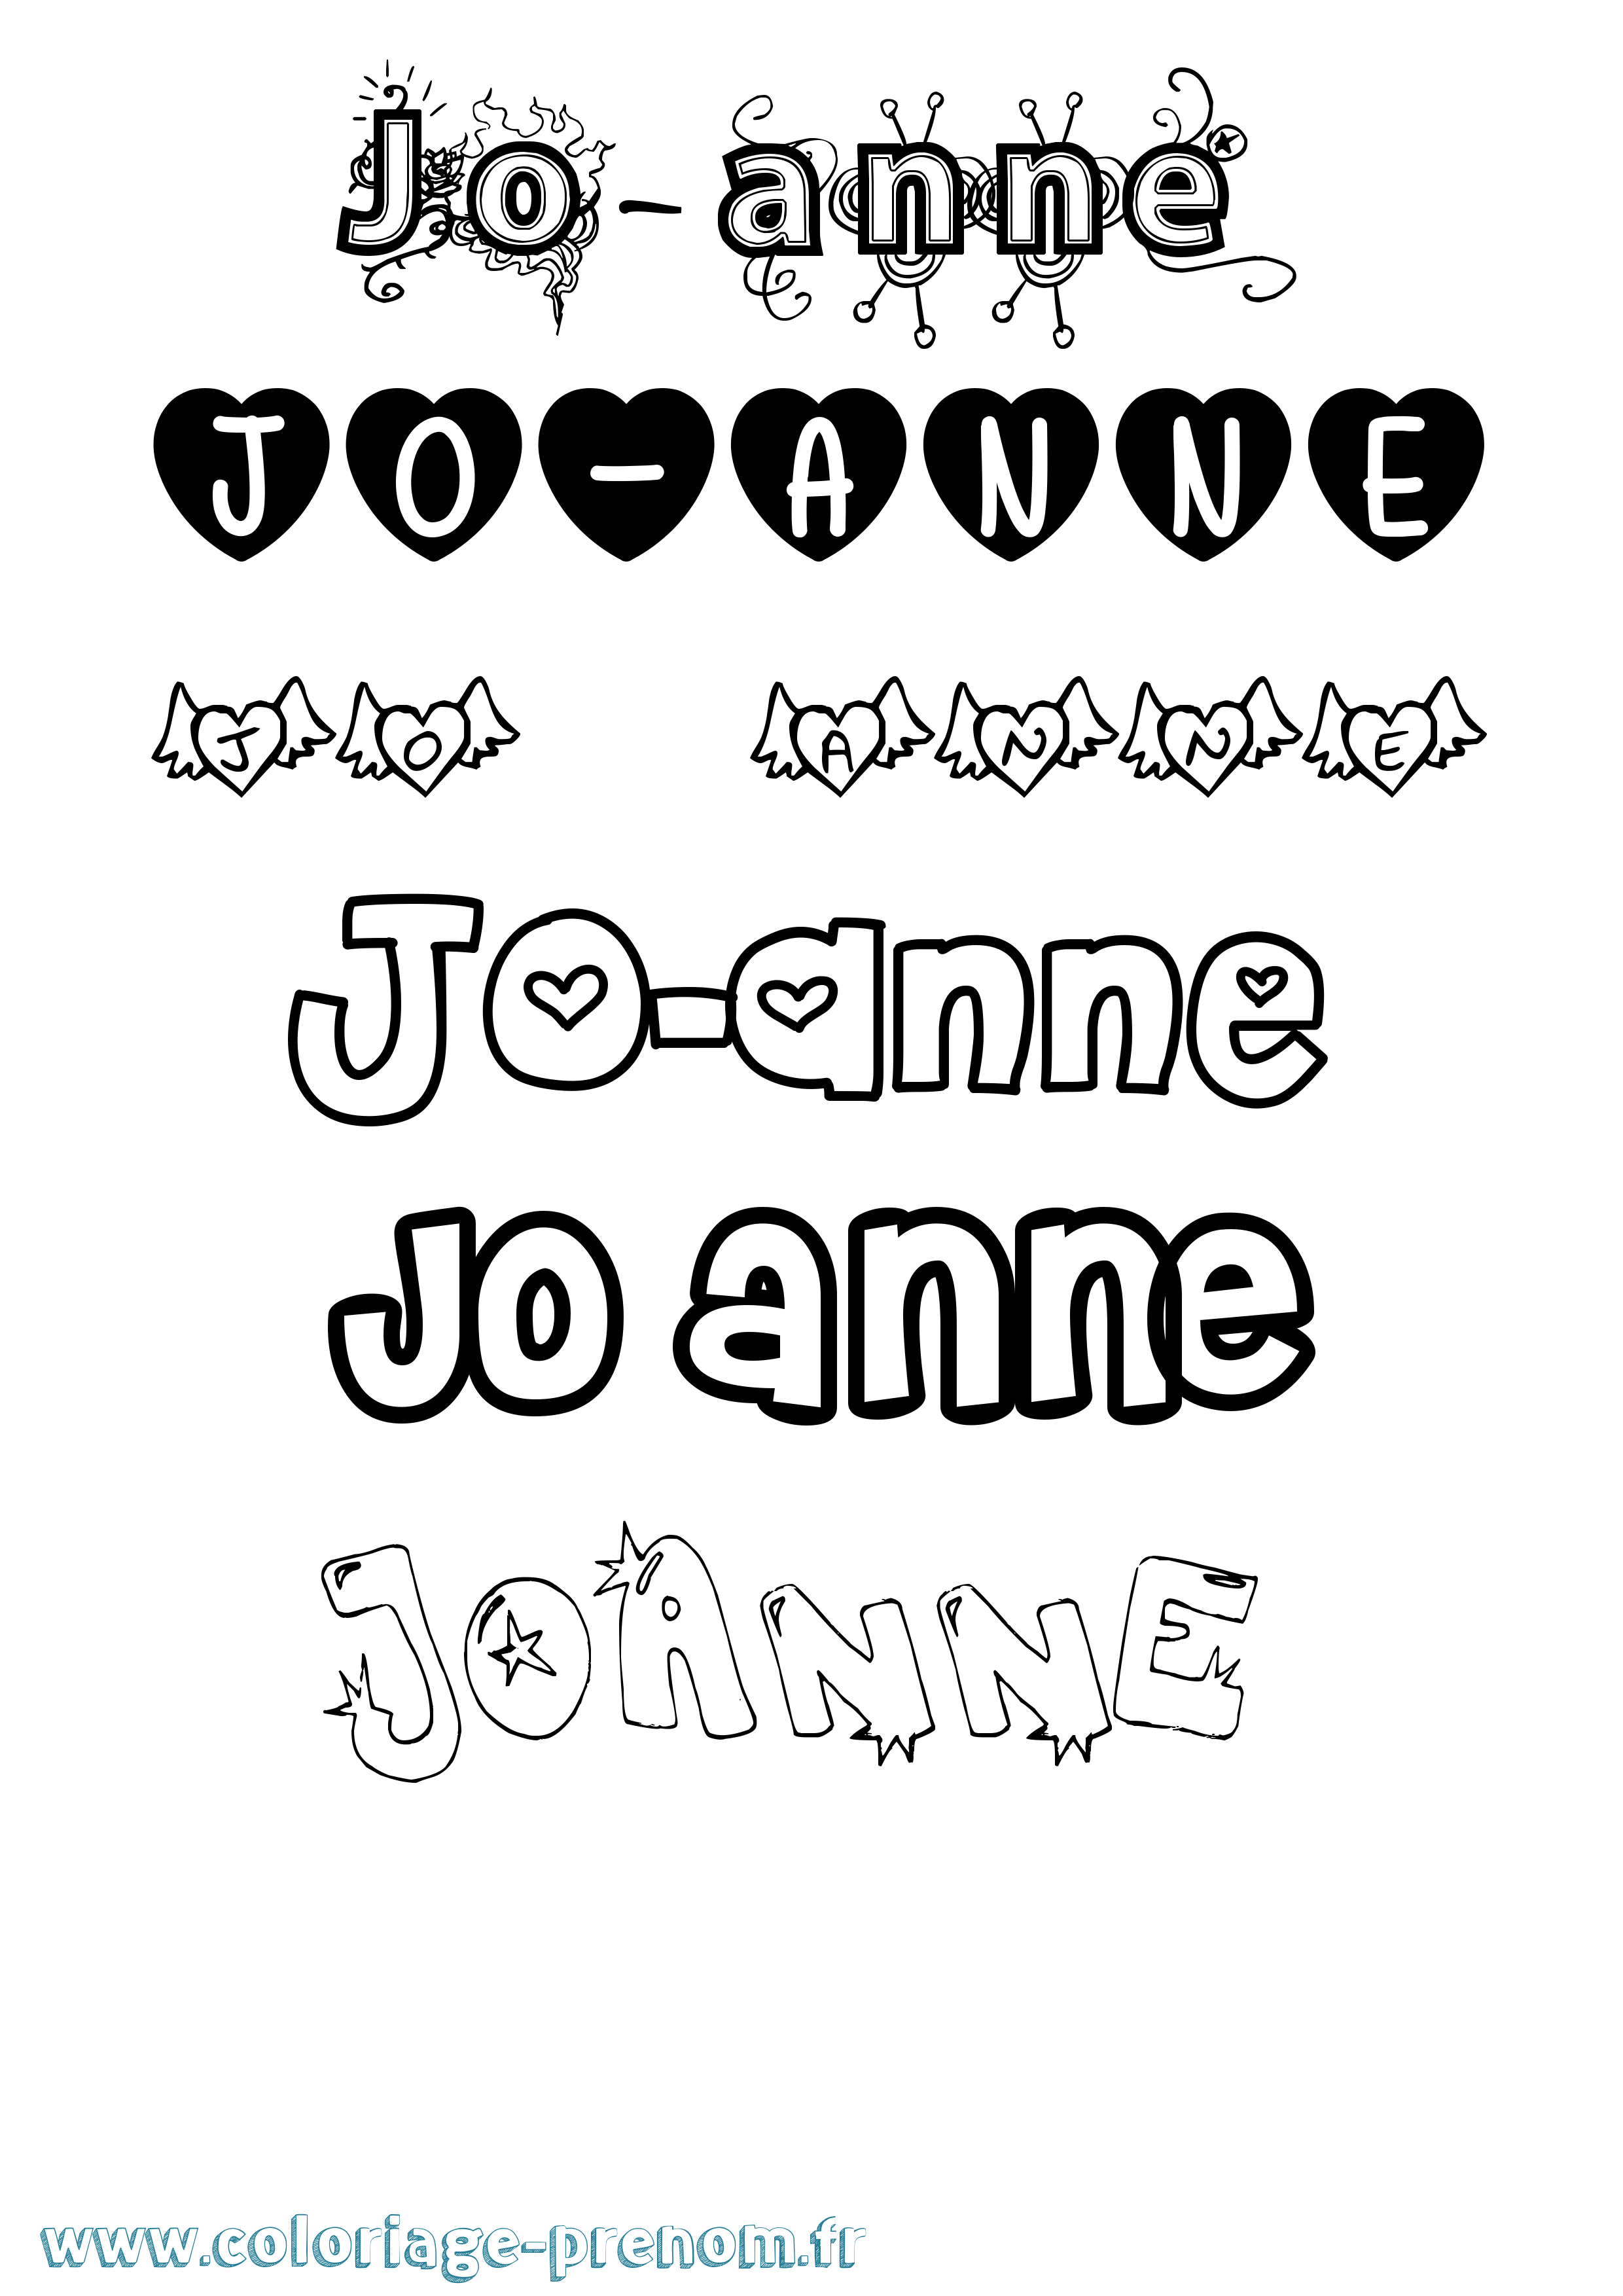 Coloriage prénom Jo-Anne Girly